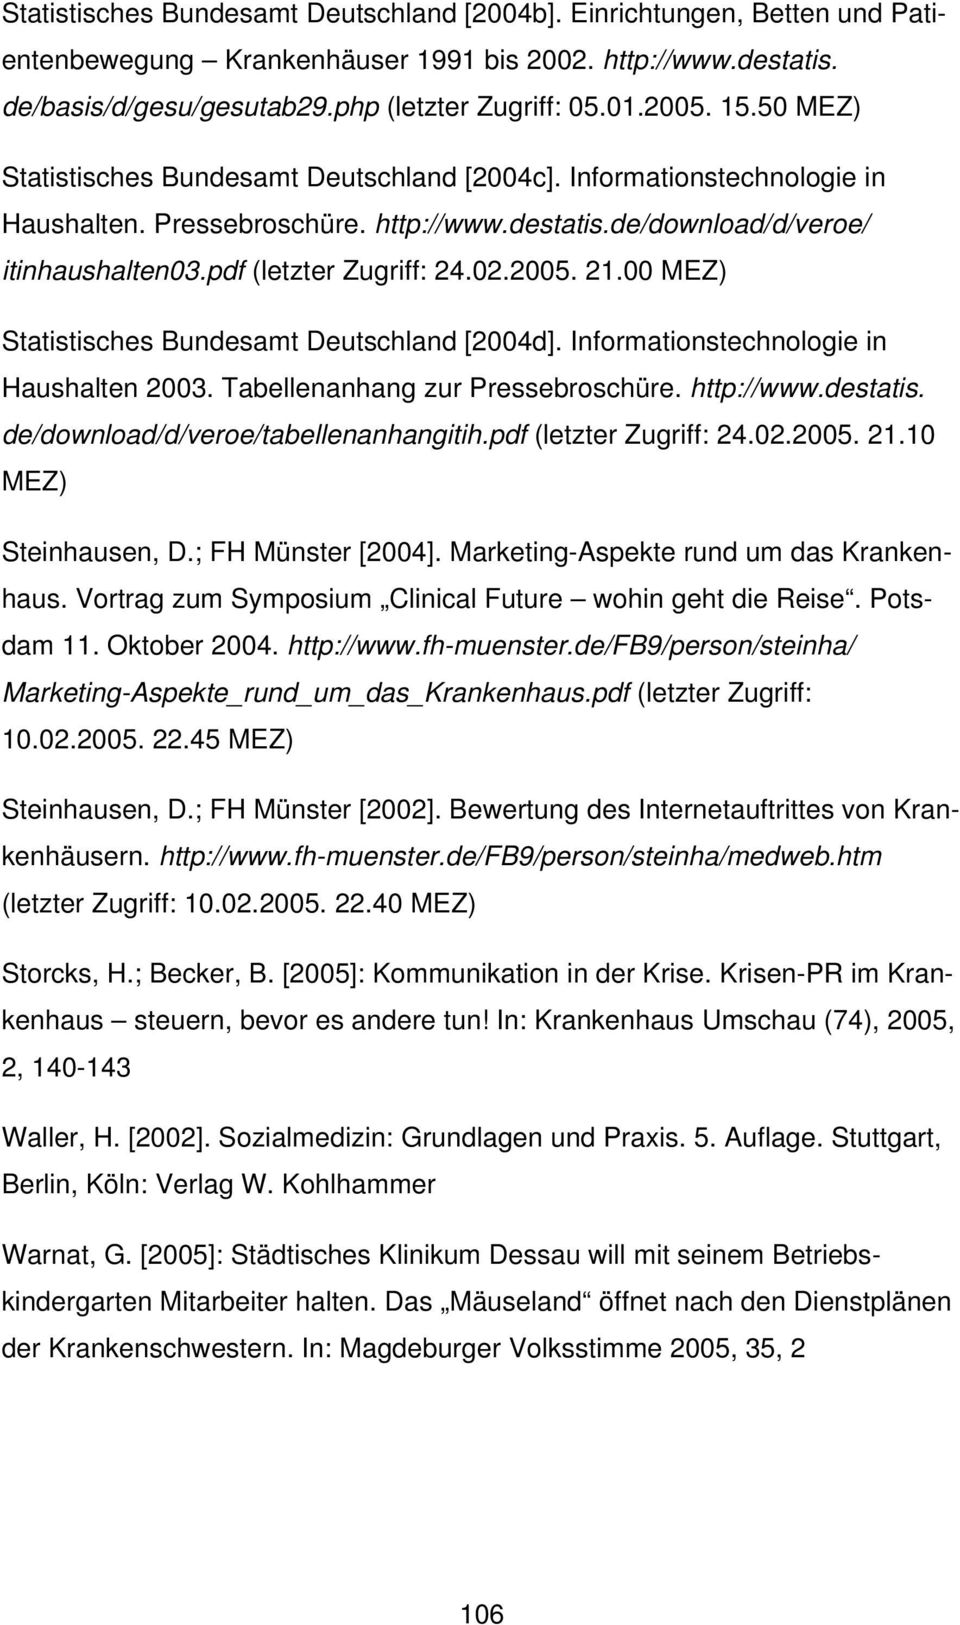 2005. 21.00 MEZ) Statistisches Bundesamt Deutschland [2004d]. Informationstechnologie in Haushalten 2003. Tabellenanhang zur Pressebroschüre. http://www.destatis.